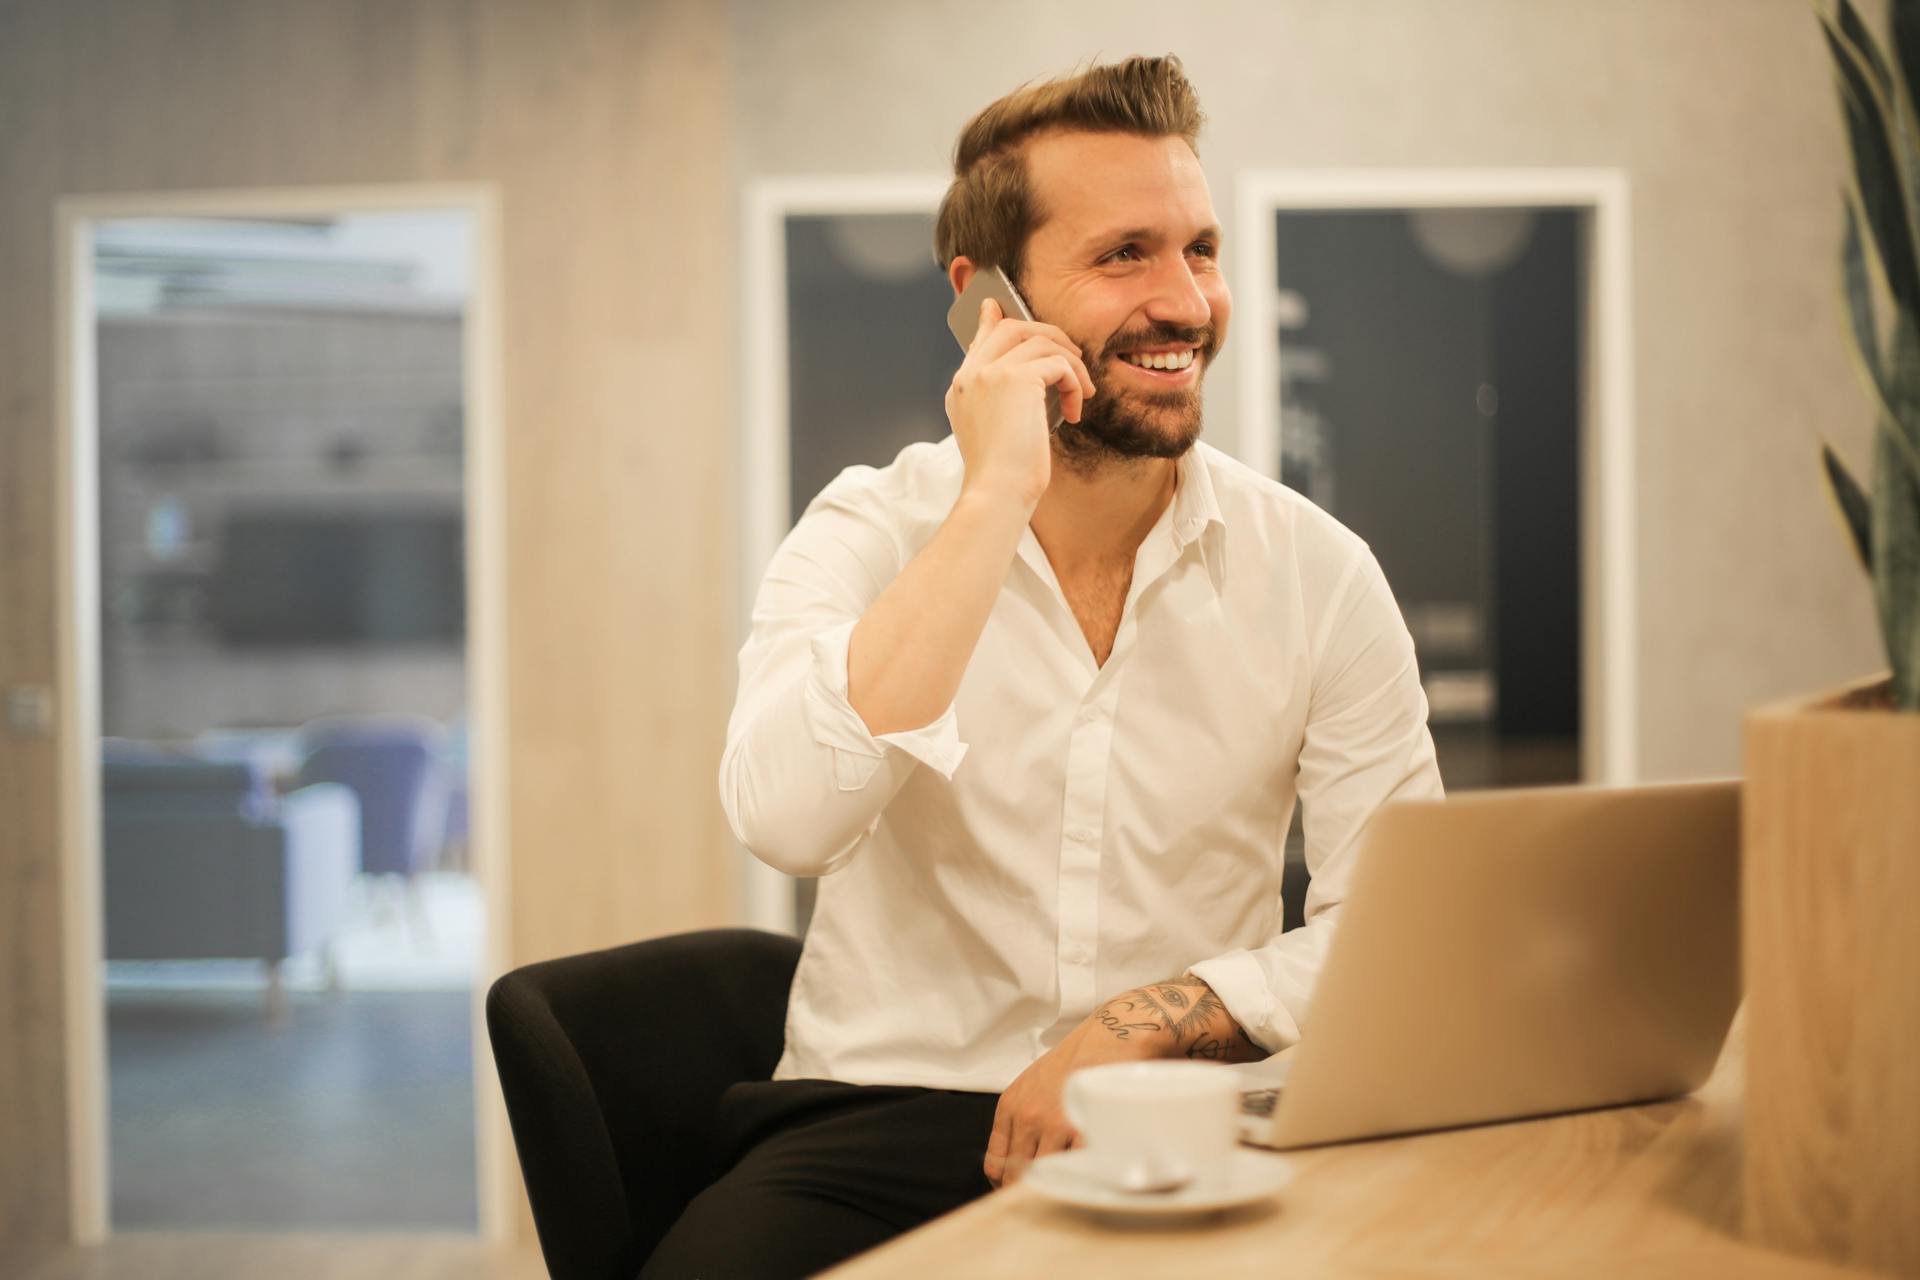 Ein Mann spricht am Telefon und lächelt | Quelle: Pexels